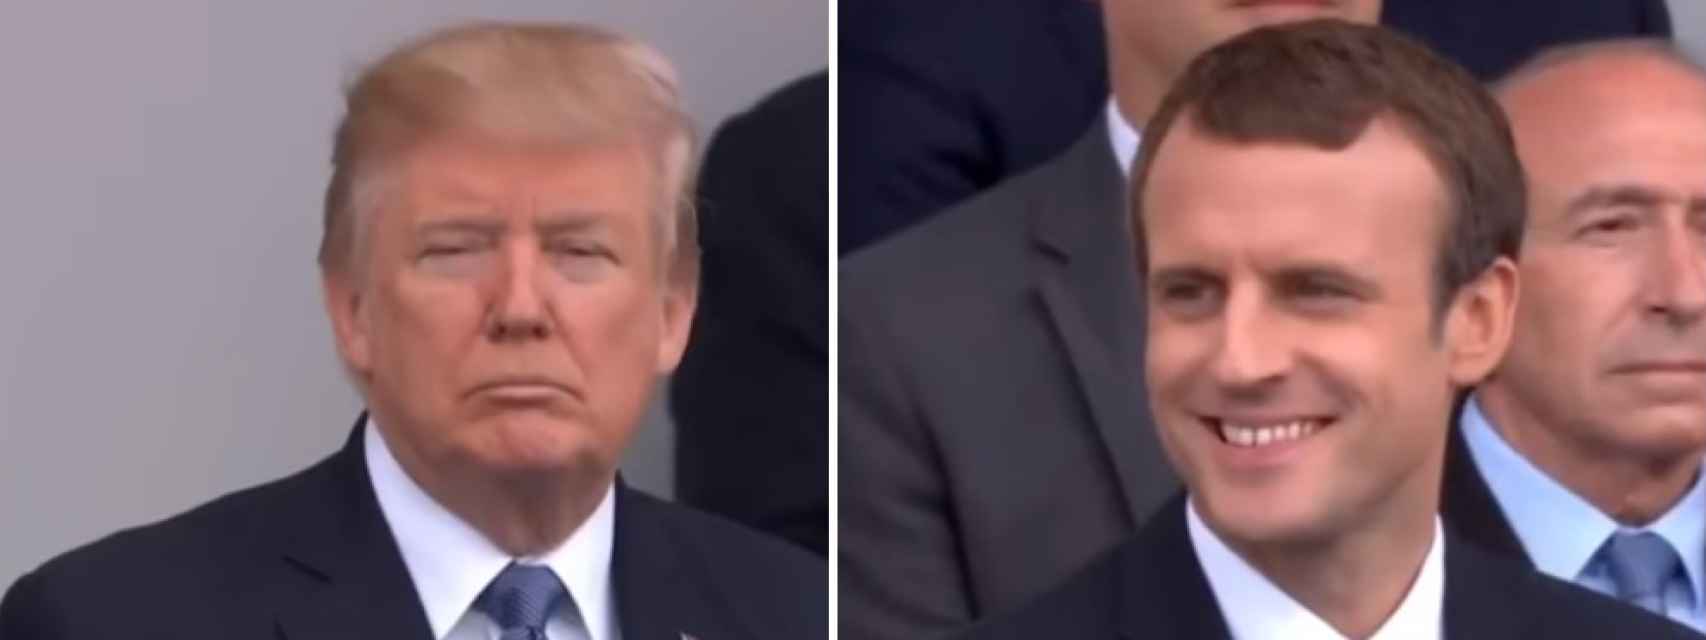 La reacción de Trump vs la reacción de Macron